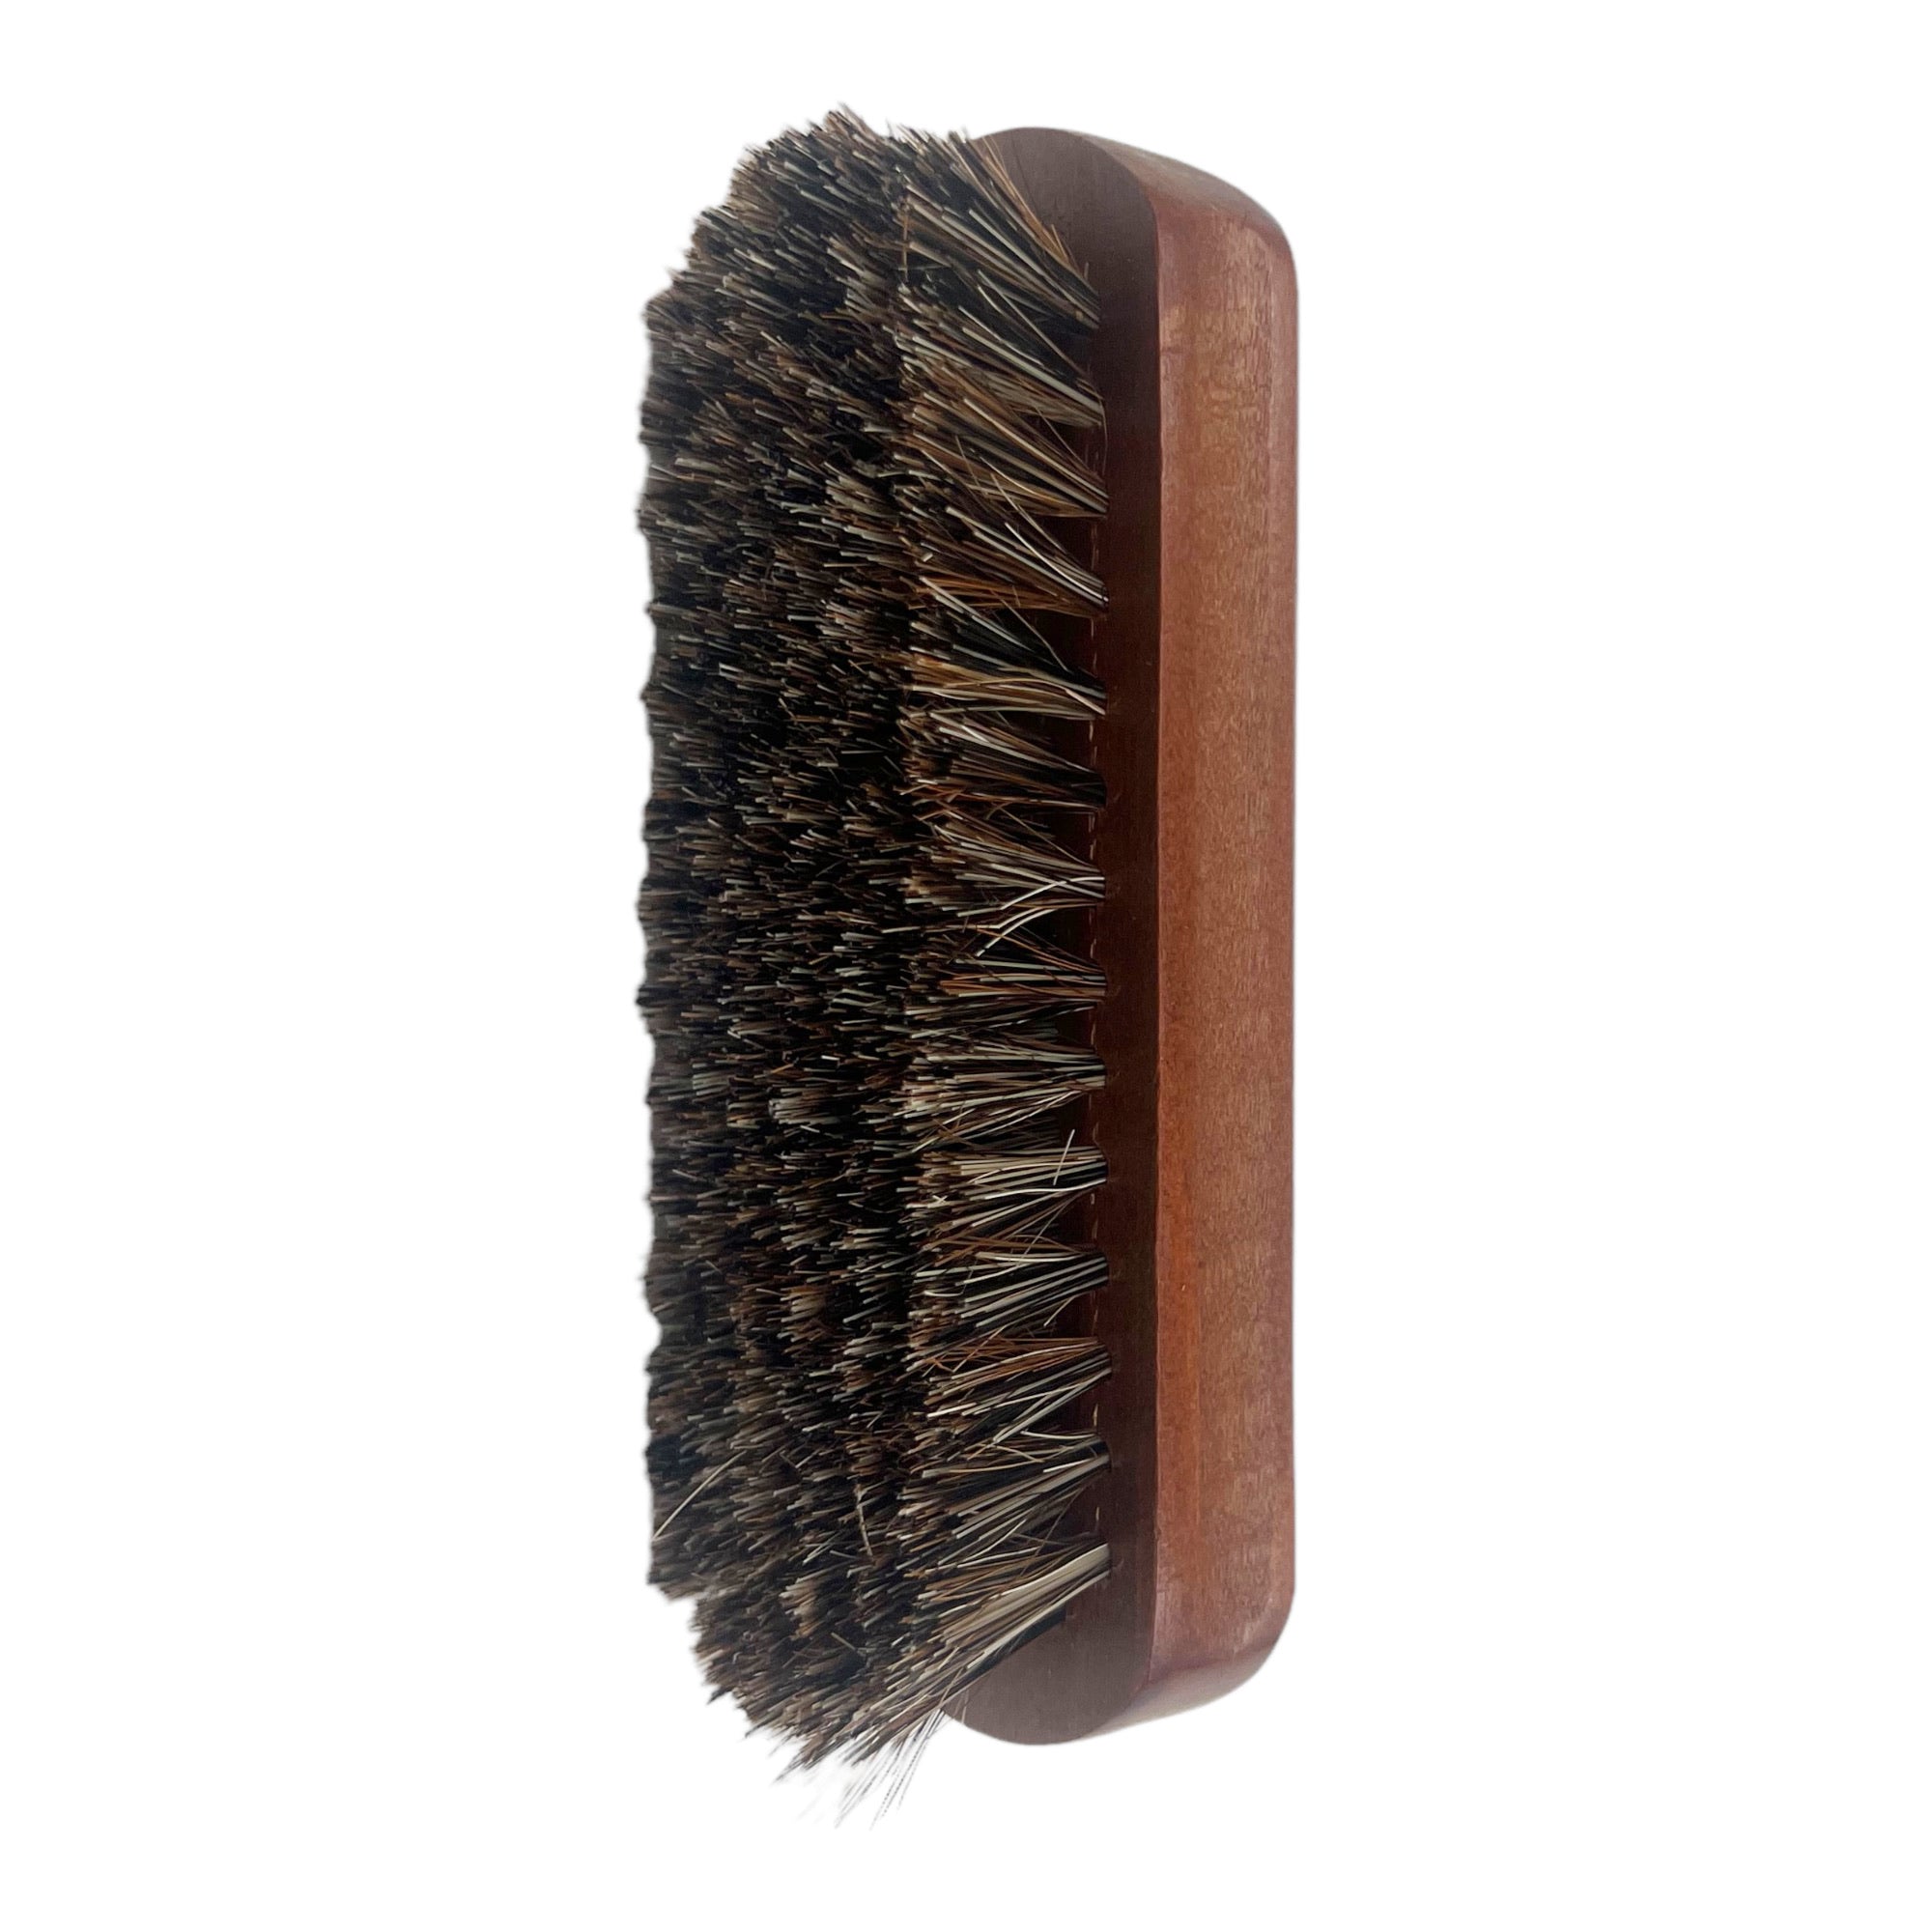 Eson - Fade Brush 100% Horse Hair 13x5cm